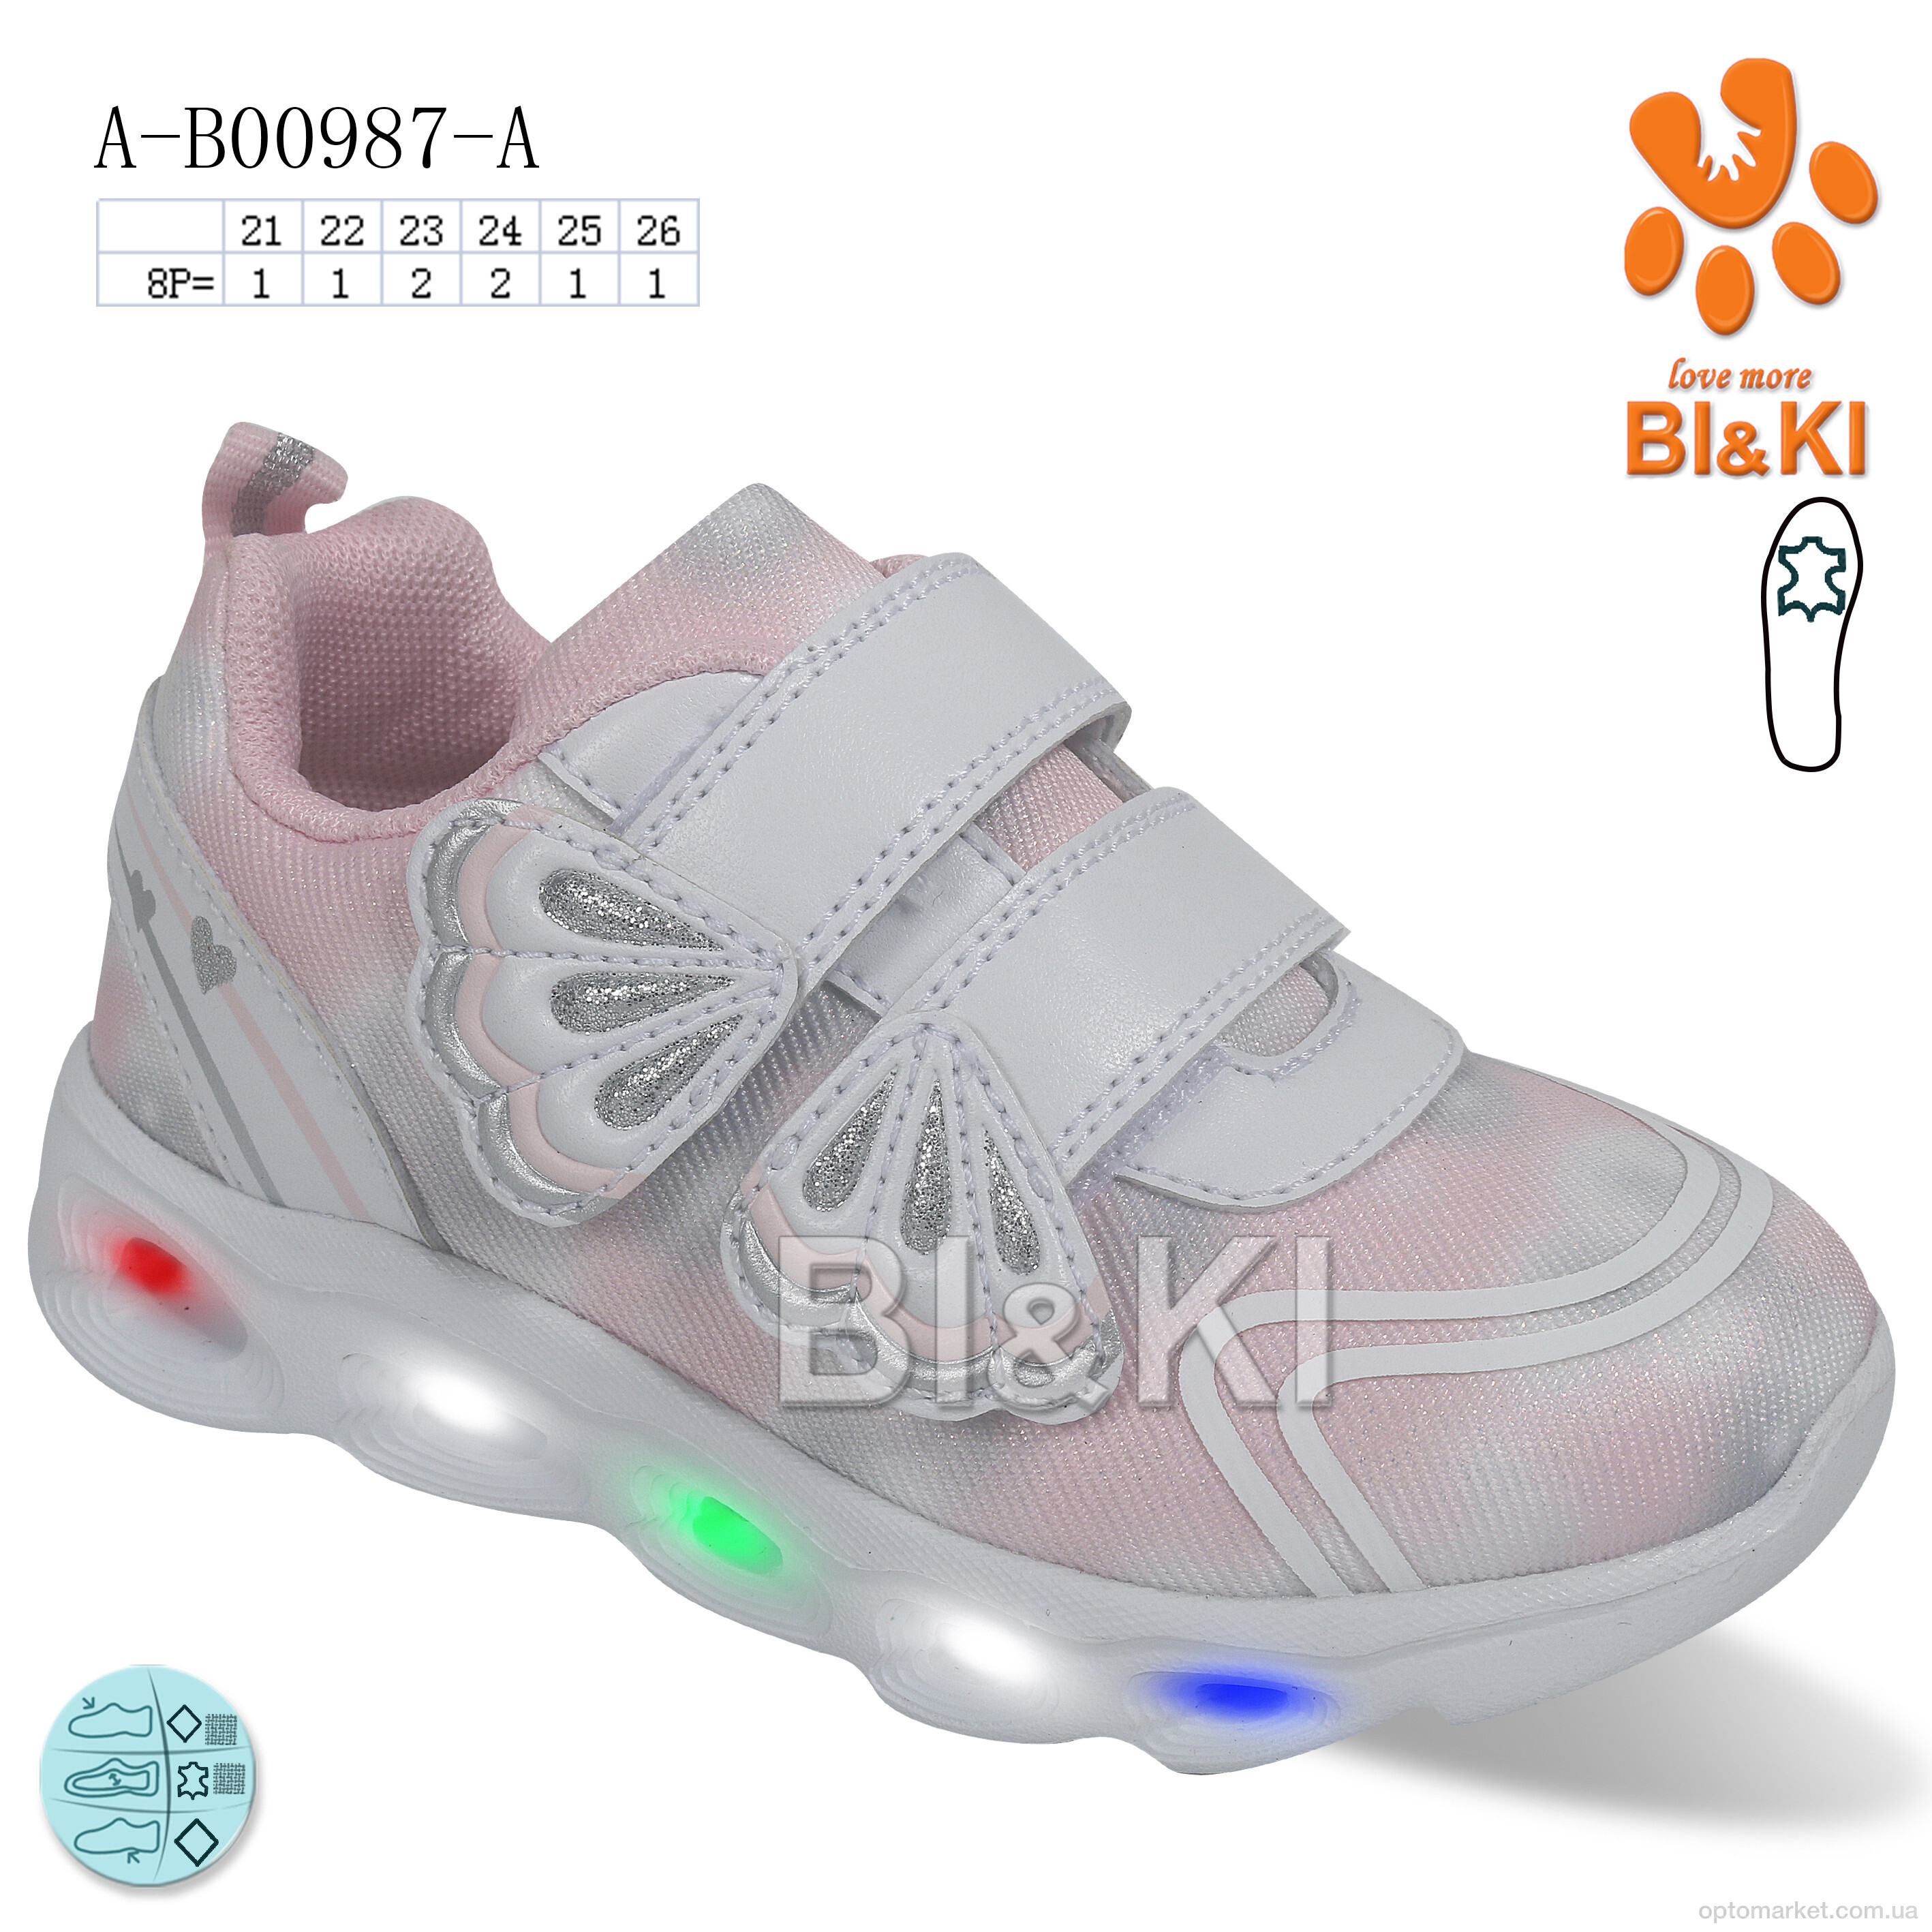 Купить Кросівки дитячі A-B00987-A LED Bi&Ki сірий, фото 1